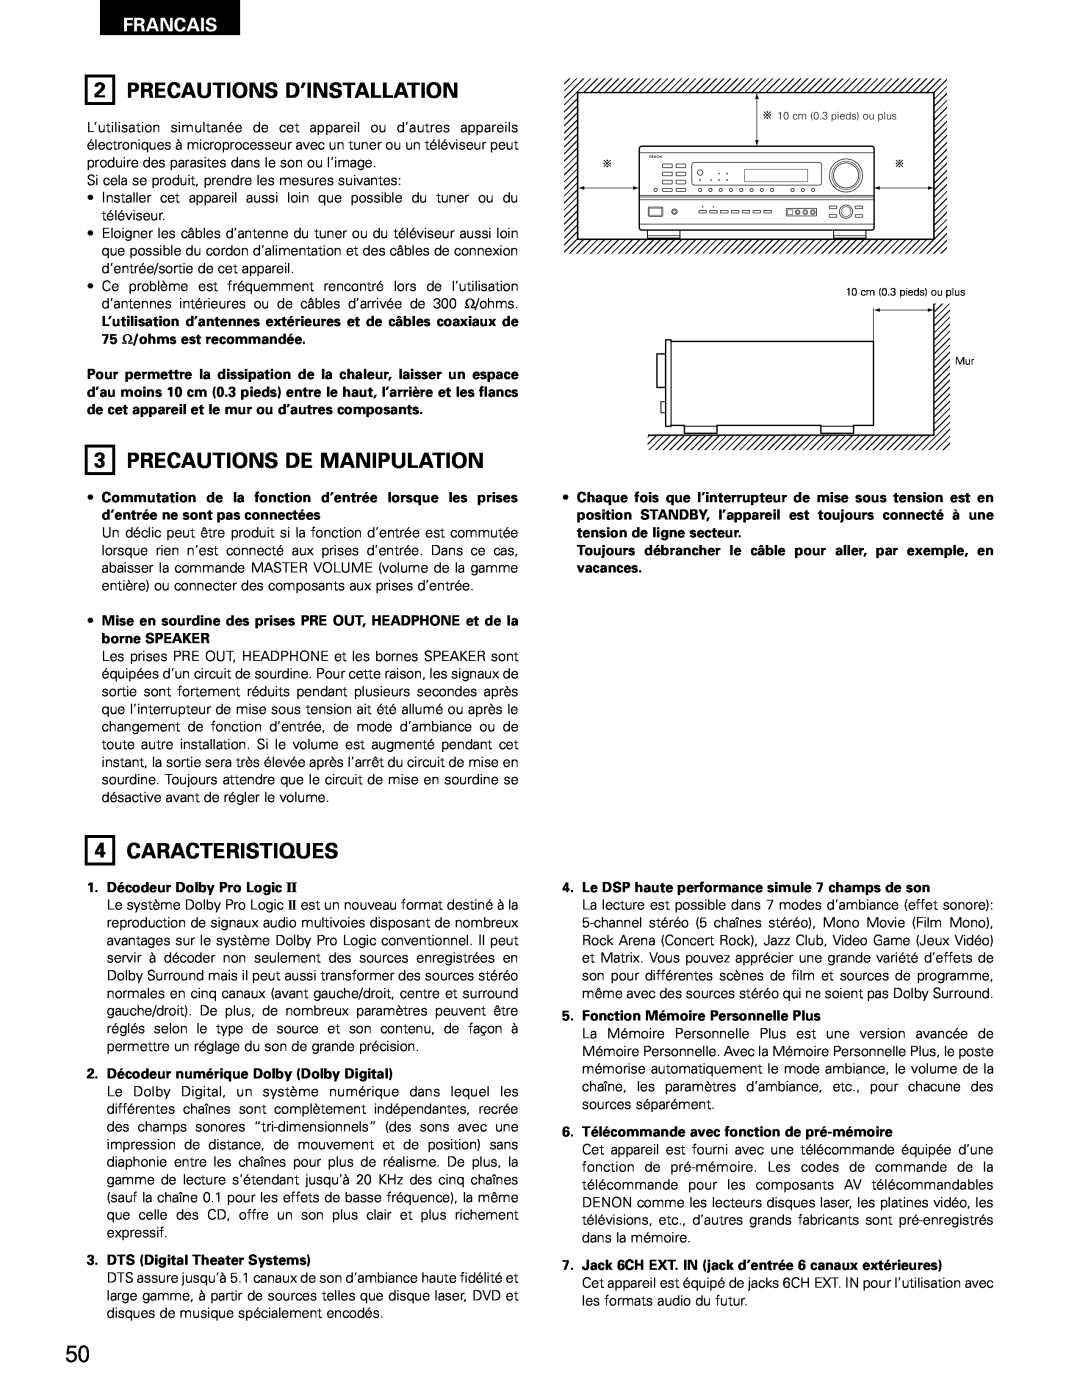 Denon AVR-1802/882 manual Precautions D’Installation, 3PRECAUTIONS DE MANIPULATION, 4CARACTERISTIQUES, Francais 